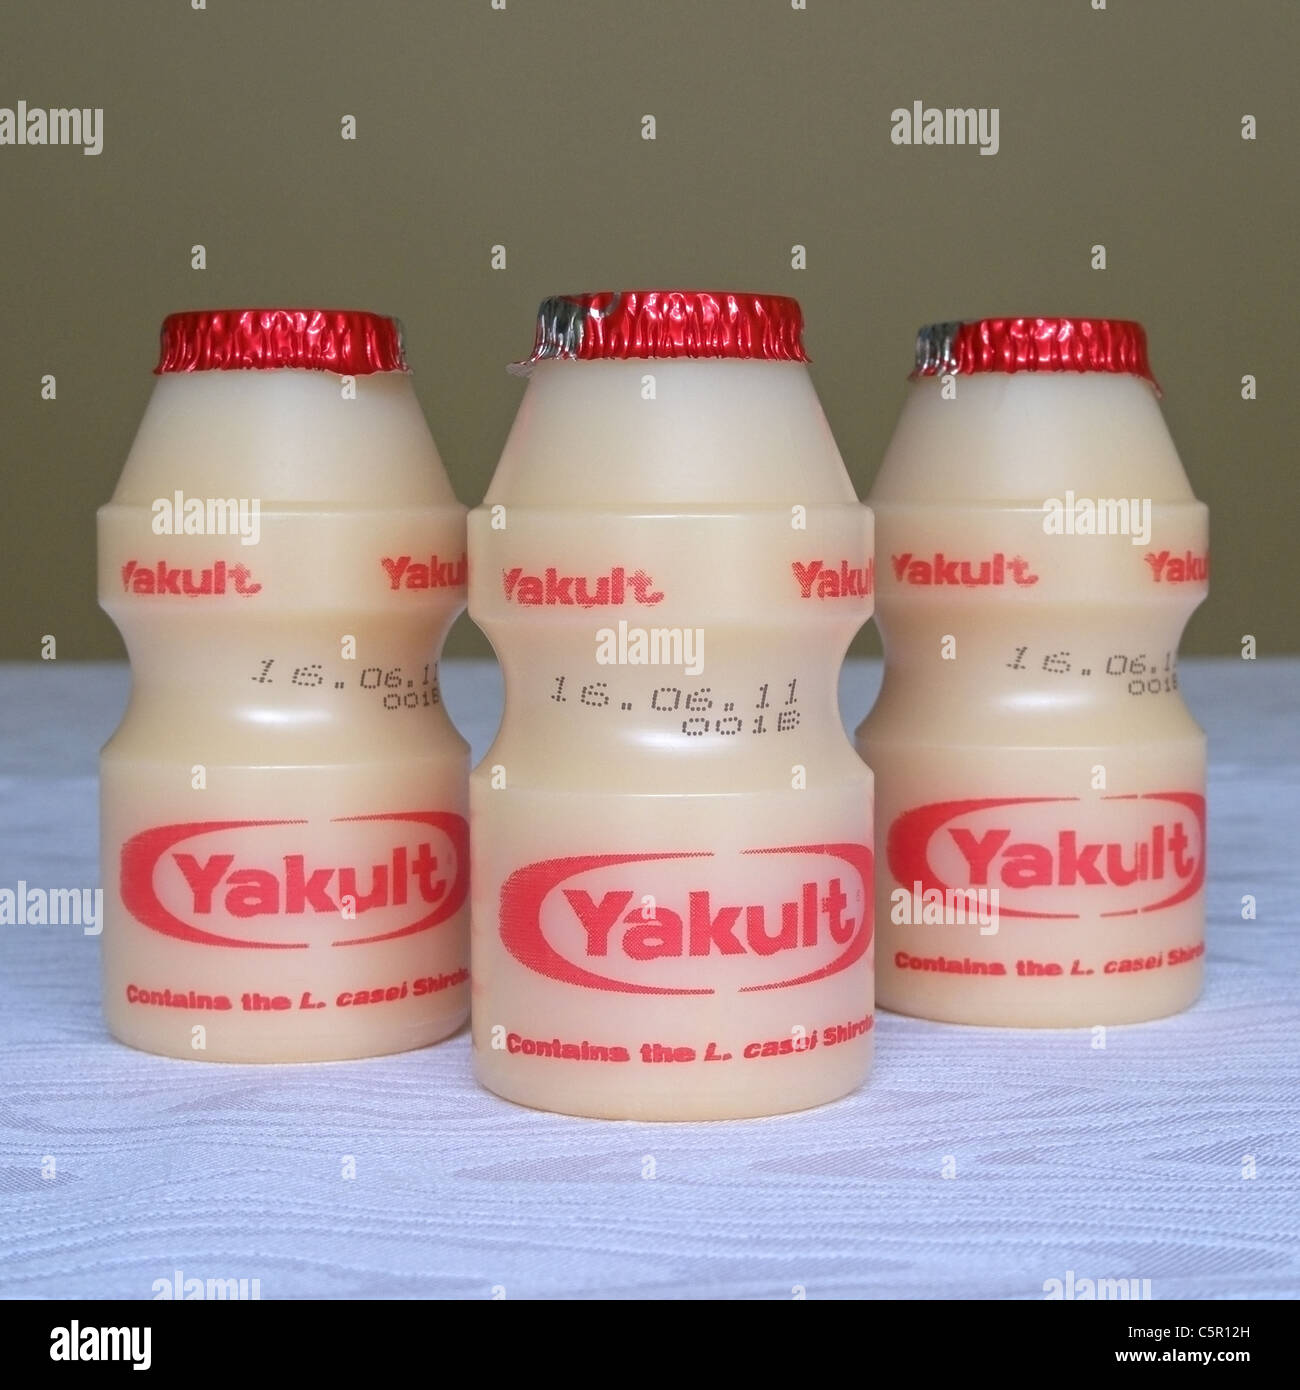 Yakult Style Water Bottle & Strap – KSC